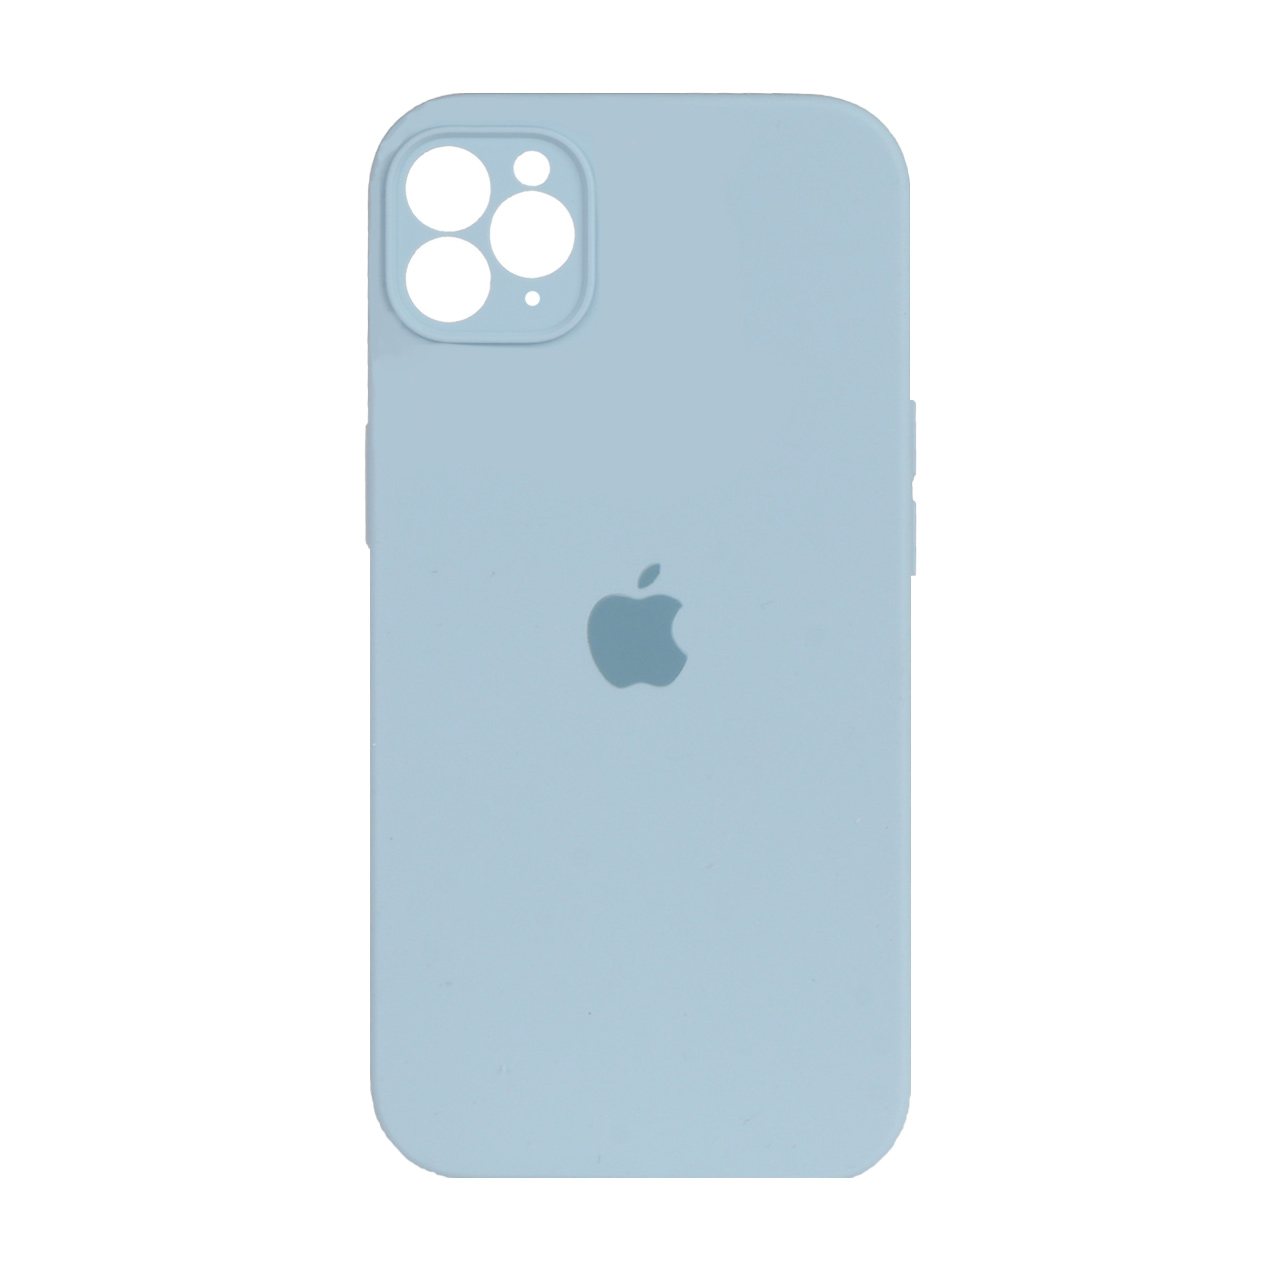 قاب سیلیکونی پاک کنی محافظ لنزدار iPhone 11 Pro - آبی روشن (پک اصلی)